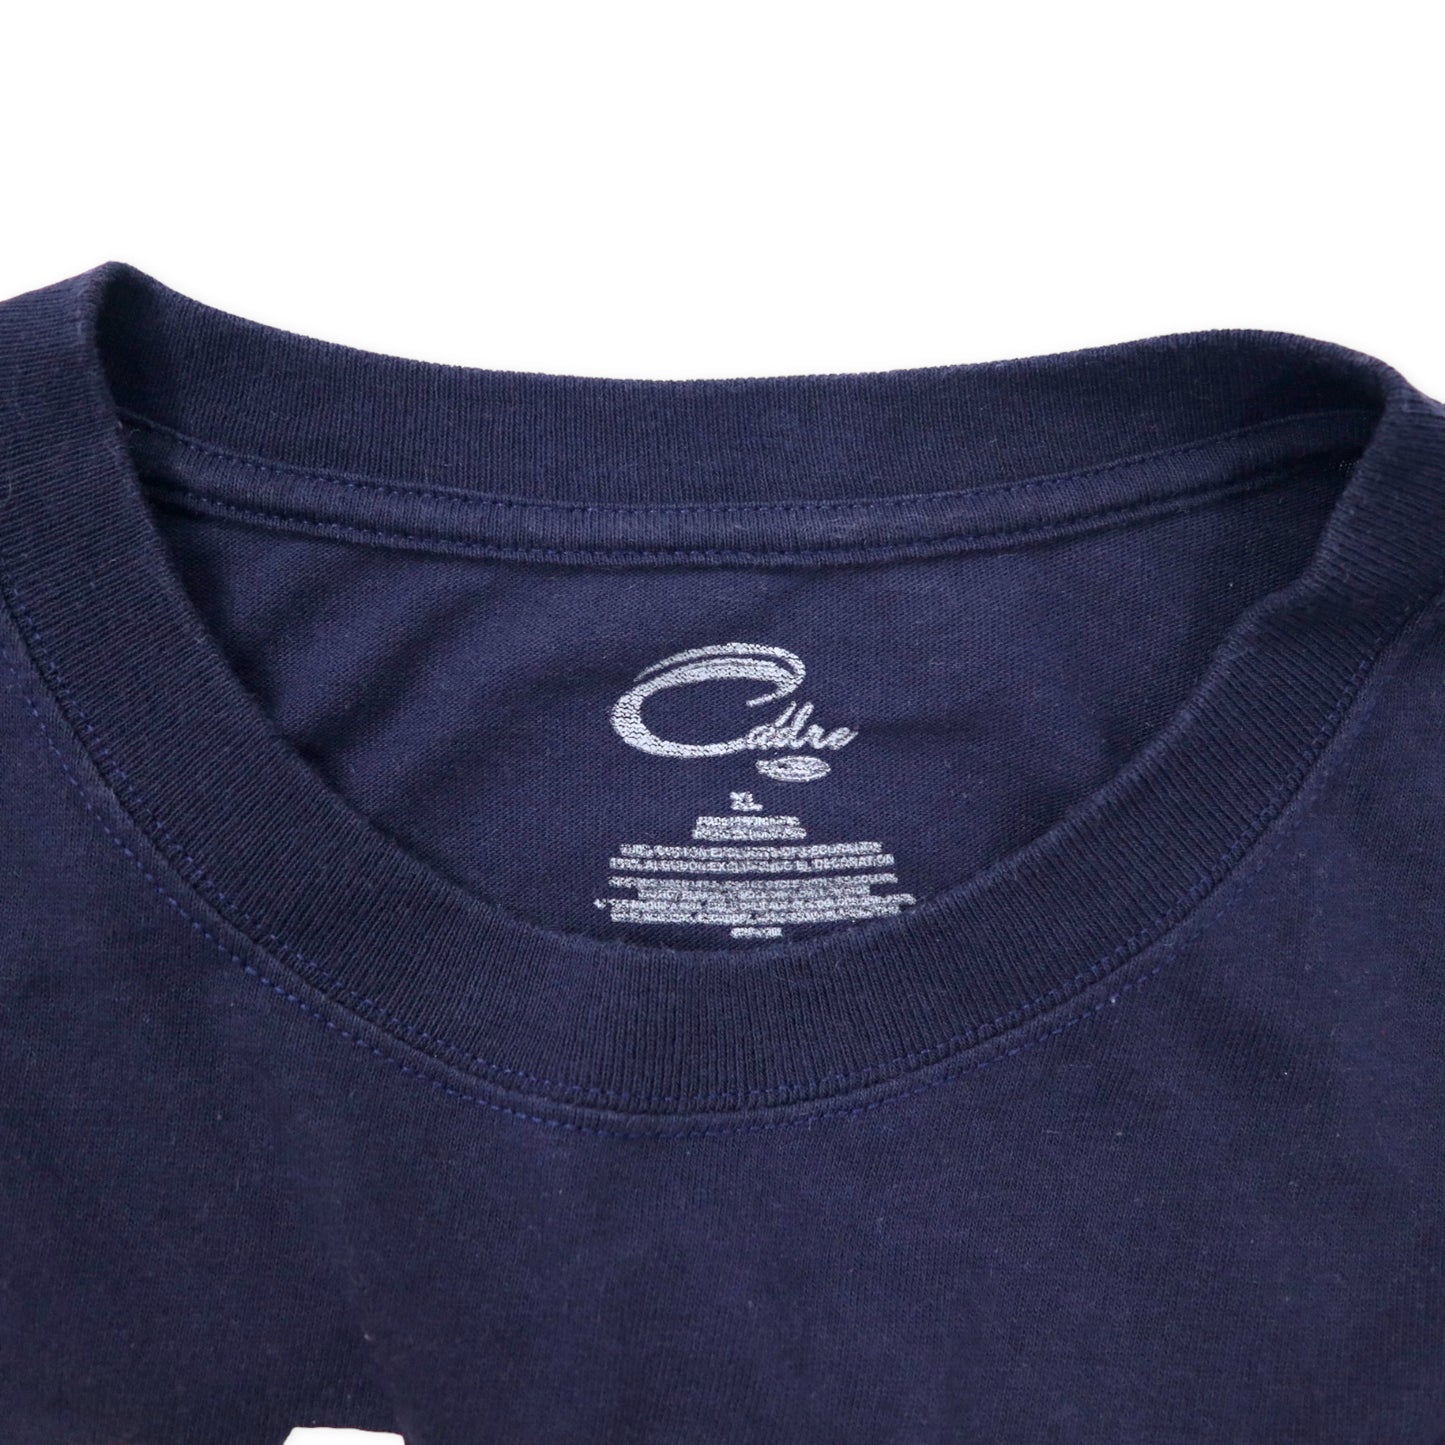 Cadre カレッジプリント Tシャツ XL ネイビー コットン GEORGIA TECH ビッグサイズ